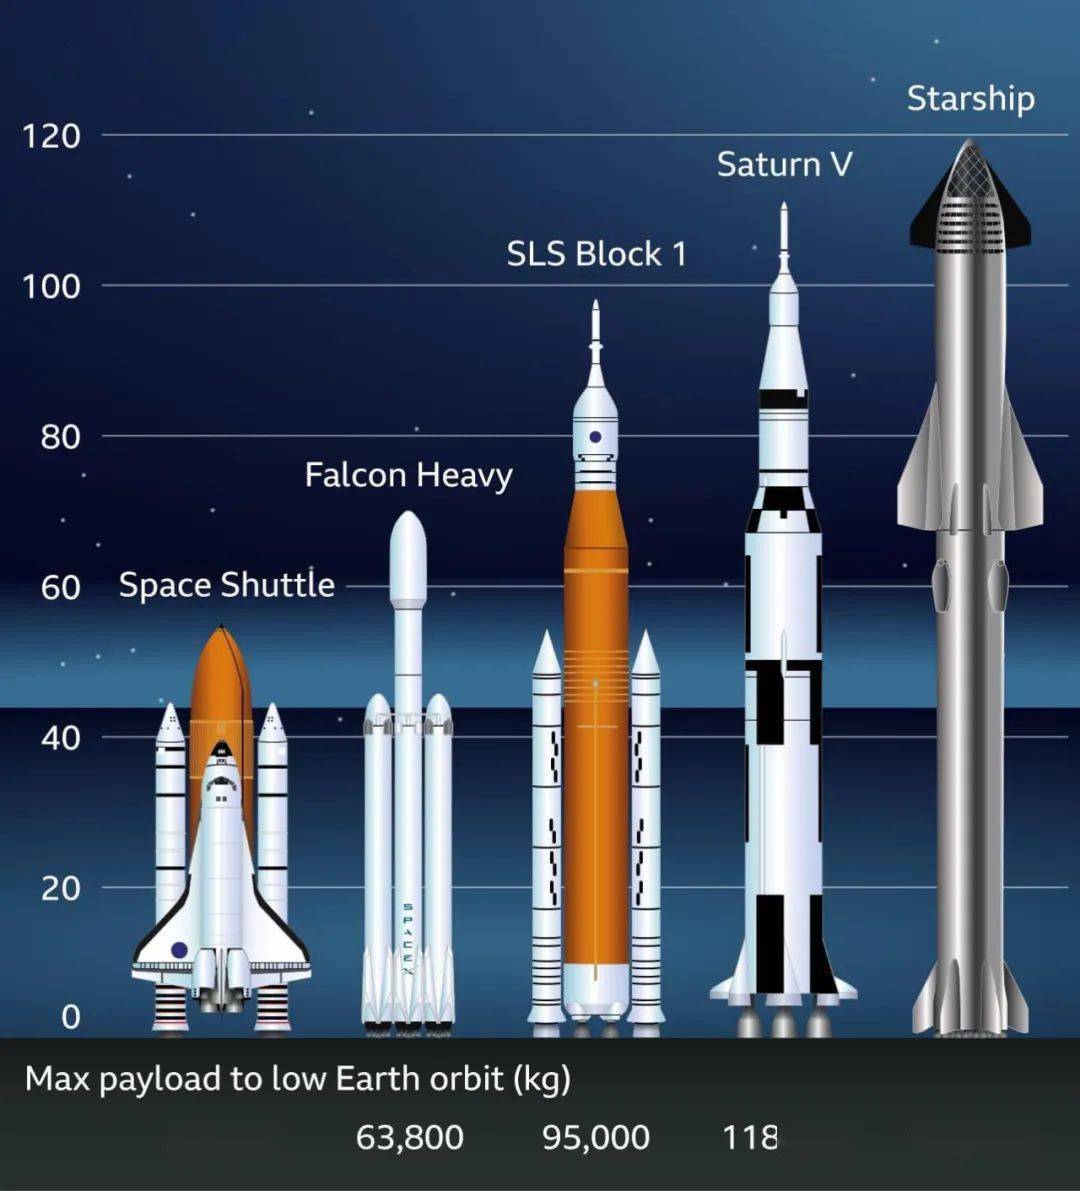 三款火箭到底谁有望成为全球第一?今天咱就来聊聊.